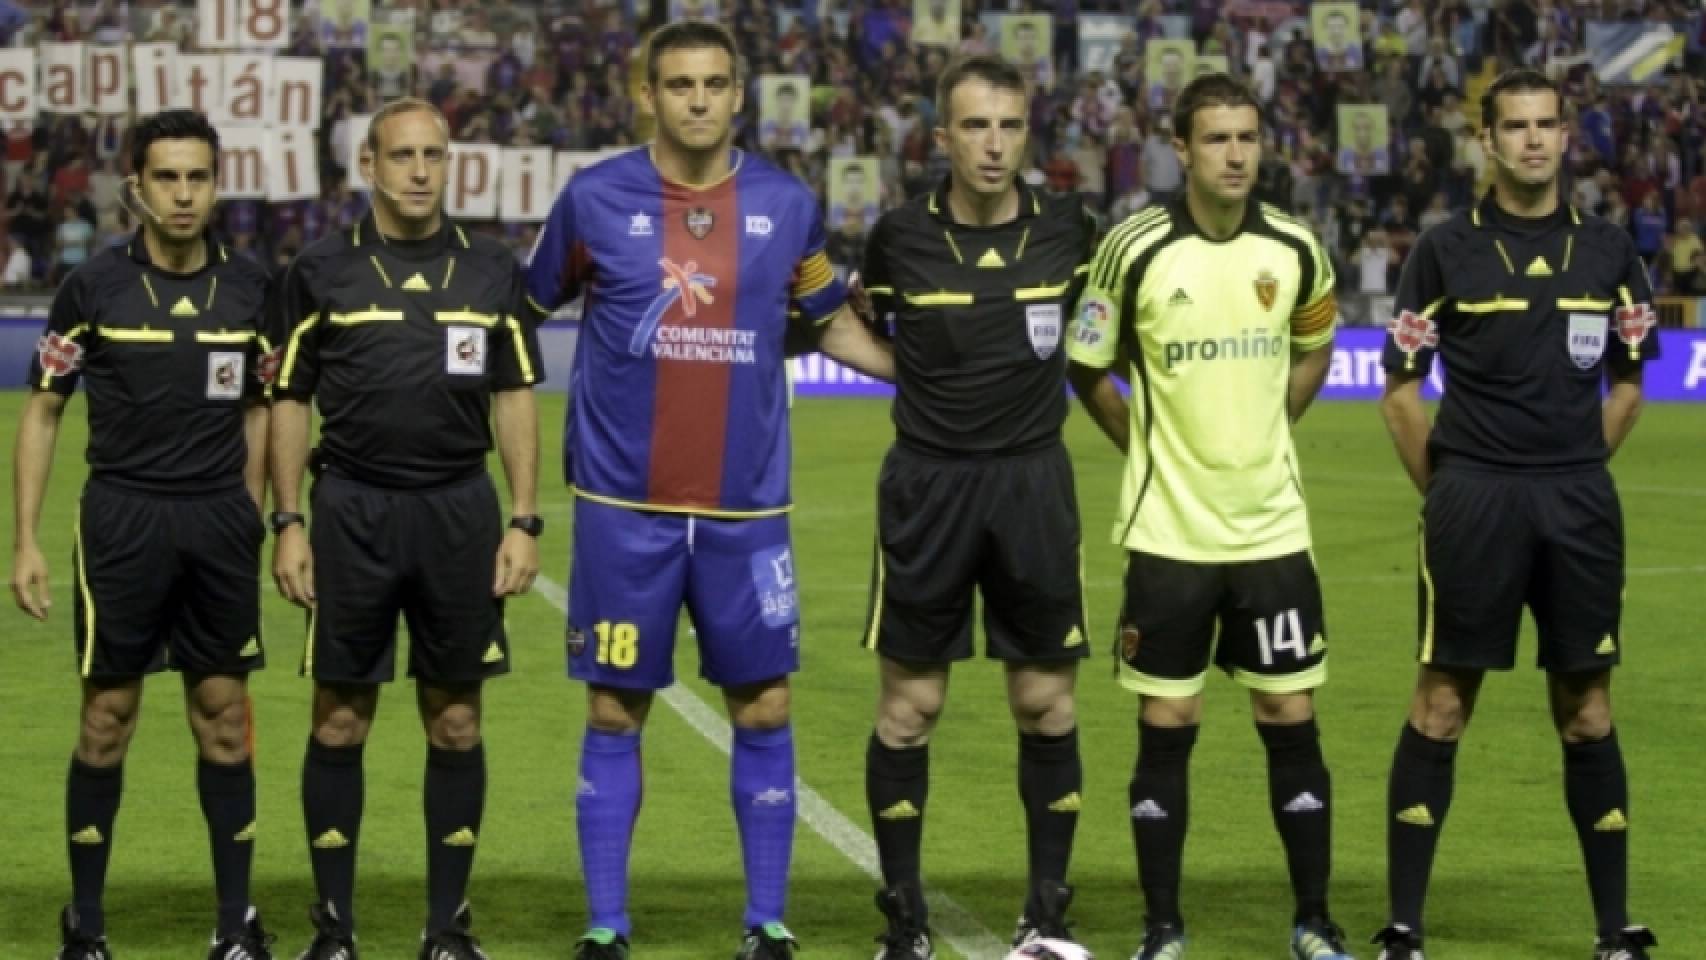 Los capitanes de los equipos previos al Levante - Zaragoza investigado por amaño. Foto: levanteud.com